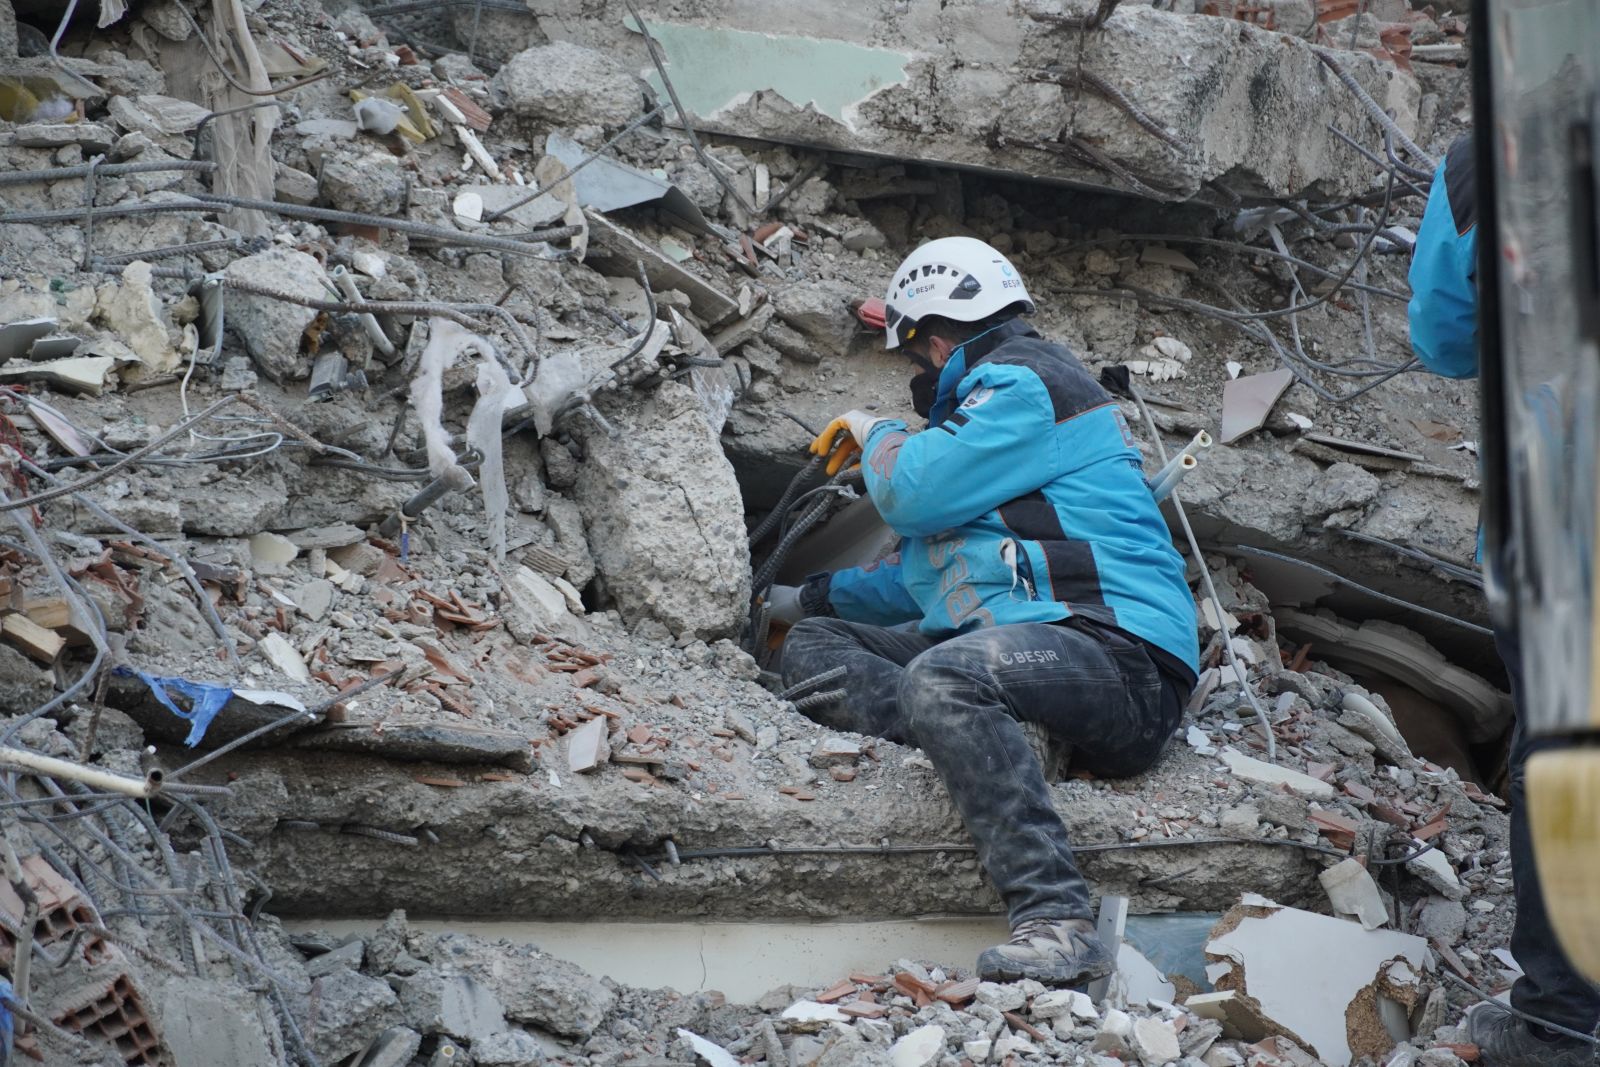 Beşir Derneği 3 Bin 300’den Fazla Personel ve Gönüllüsüyle Deprem Bölgesinde